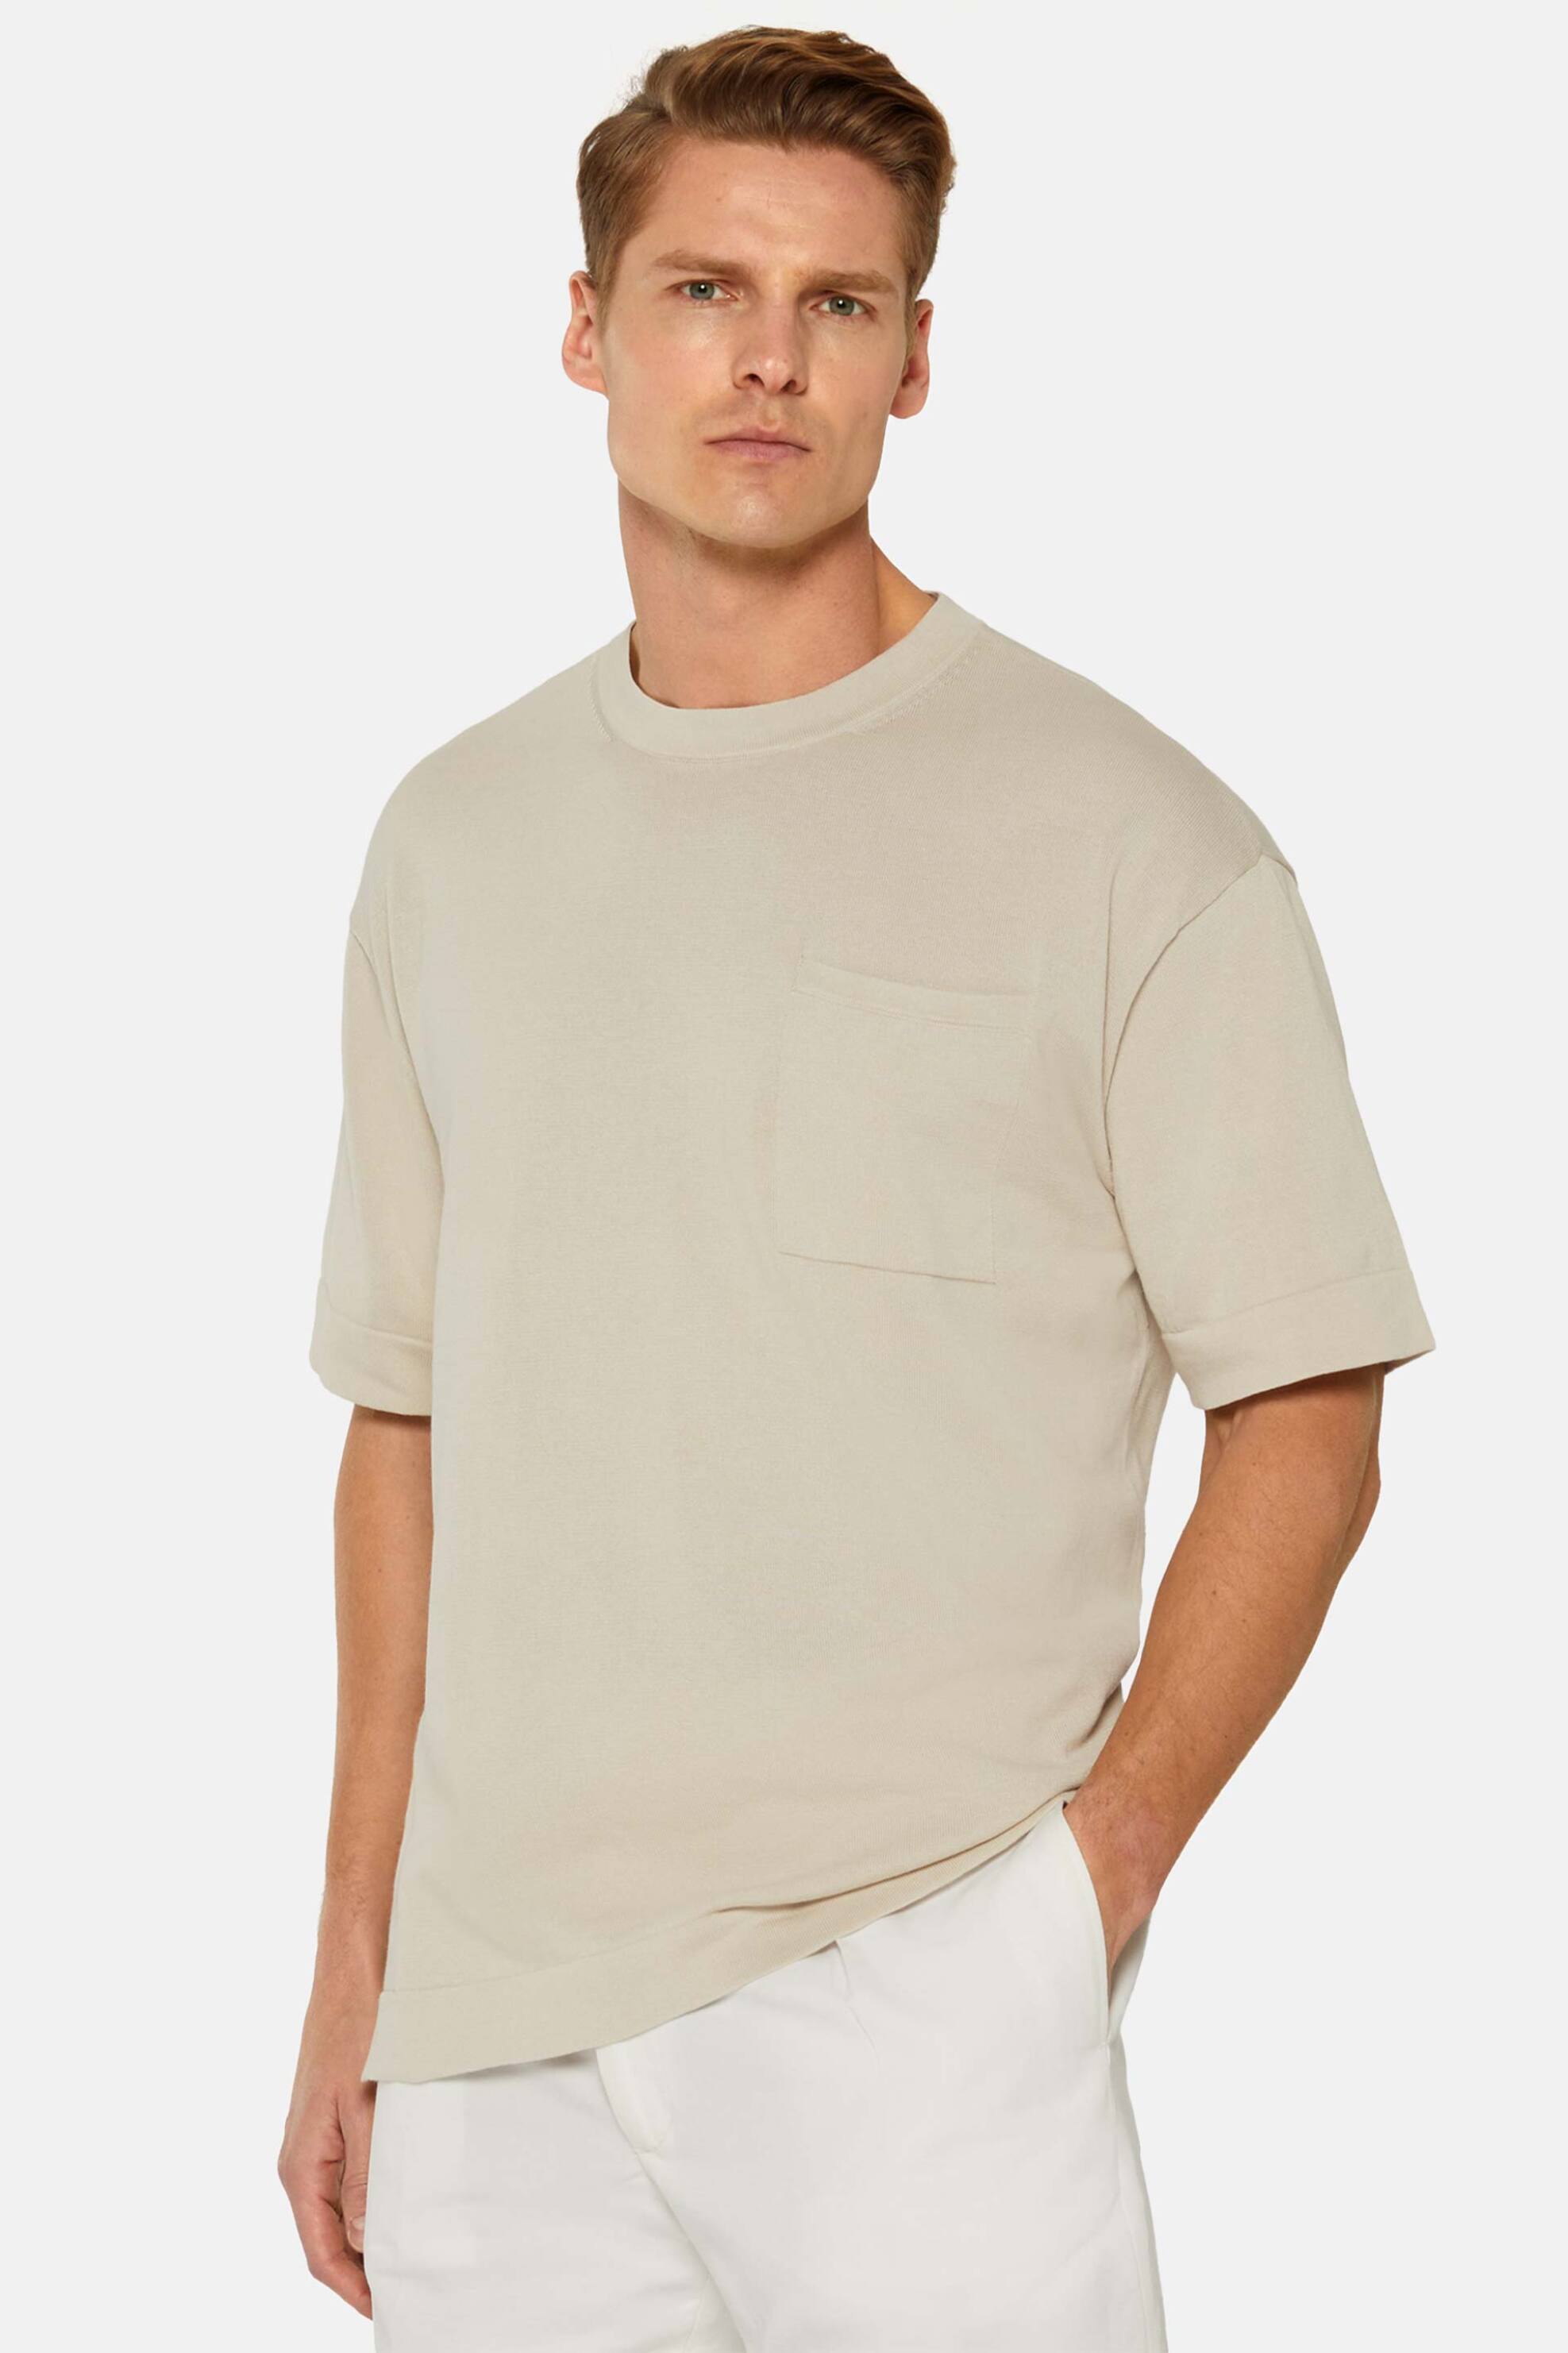 Ανδρική Μόδα > Ανδρικά Ρούχα > Ανδρικές Μπλούζες > Ανδρικά T-Shirts Boggi Milano ανδρική πλεκτή κοντομάνικη μπλούζα Relaxed Fit - BO24P070603 Μπεζ